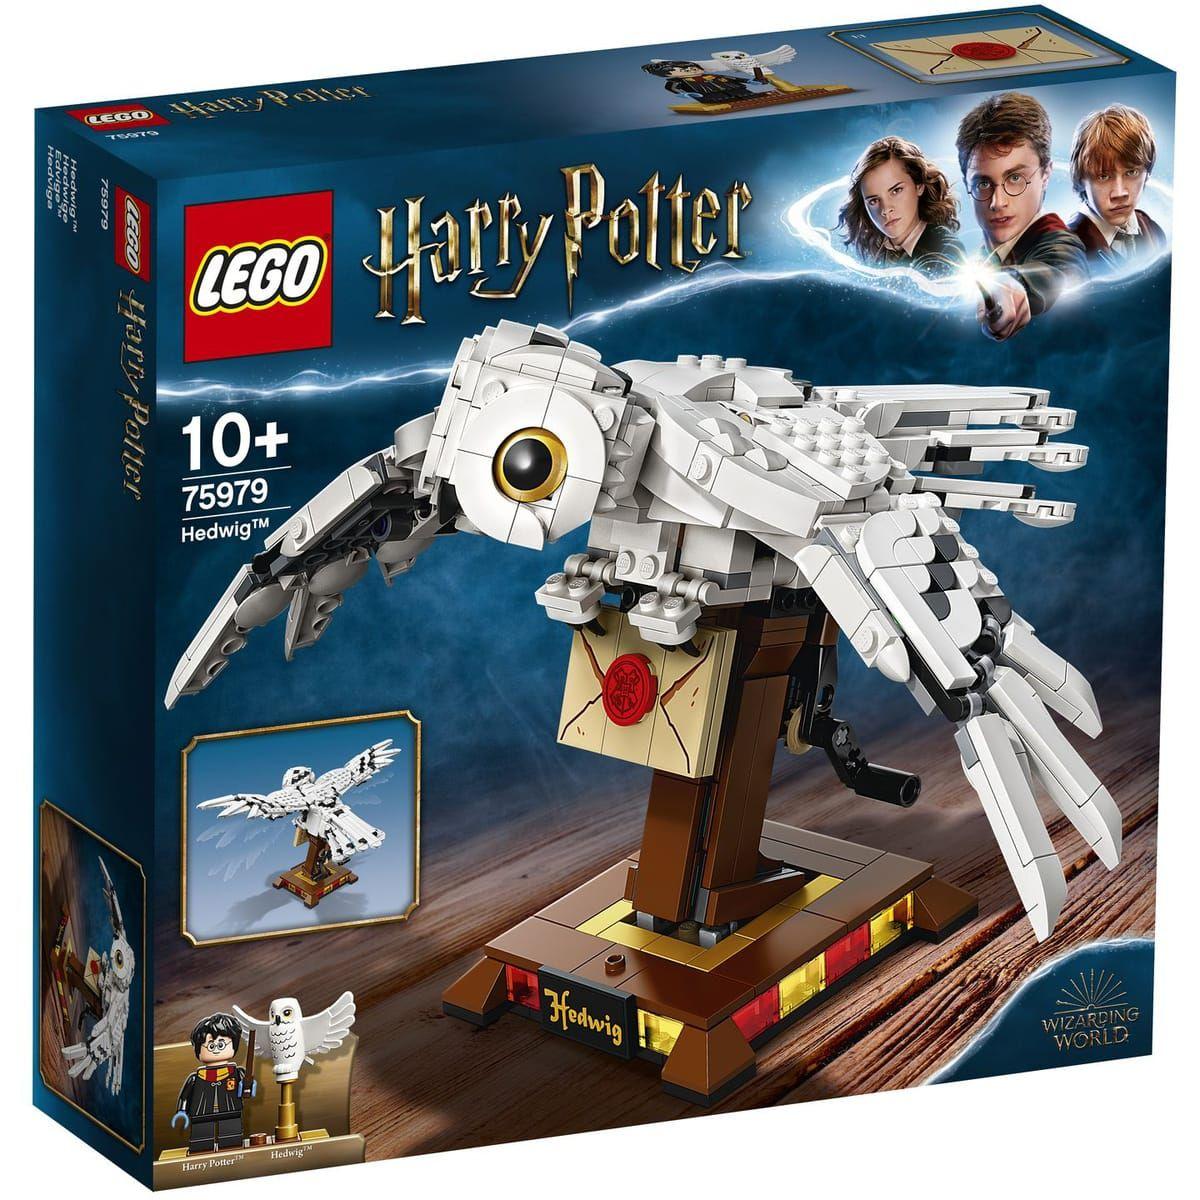 Pour Harry Potter réaliste Hedwig hibou jouet décoration de bureau cadeau